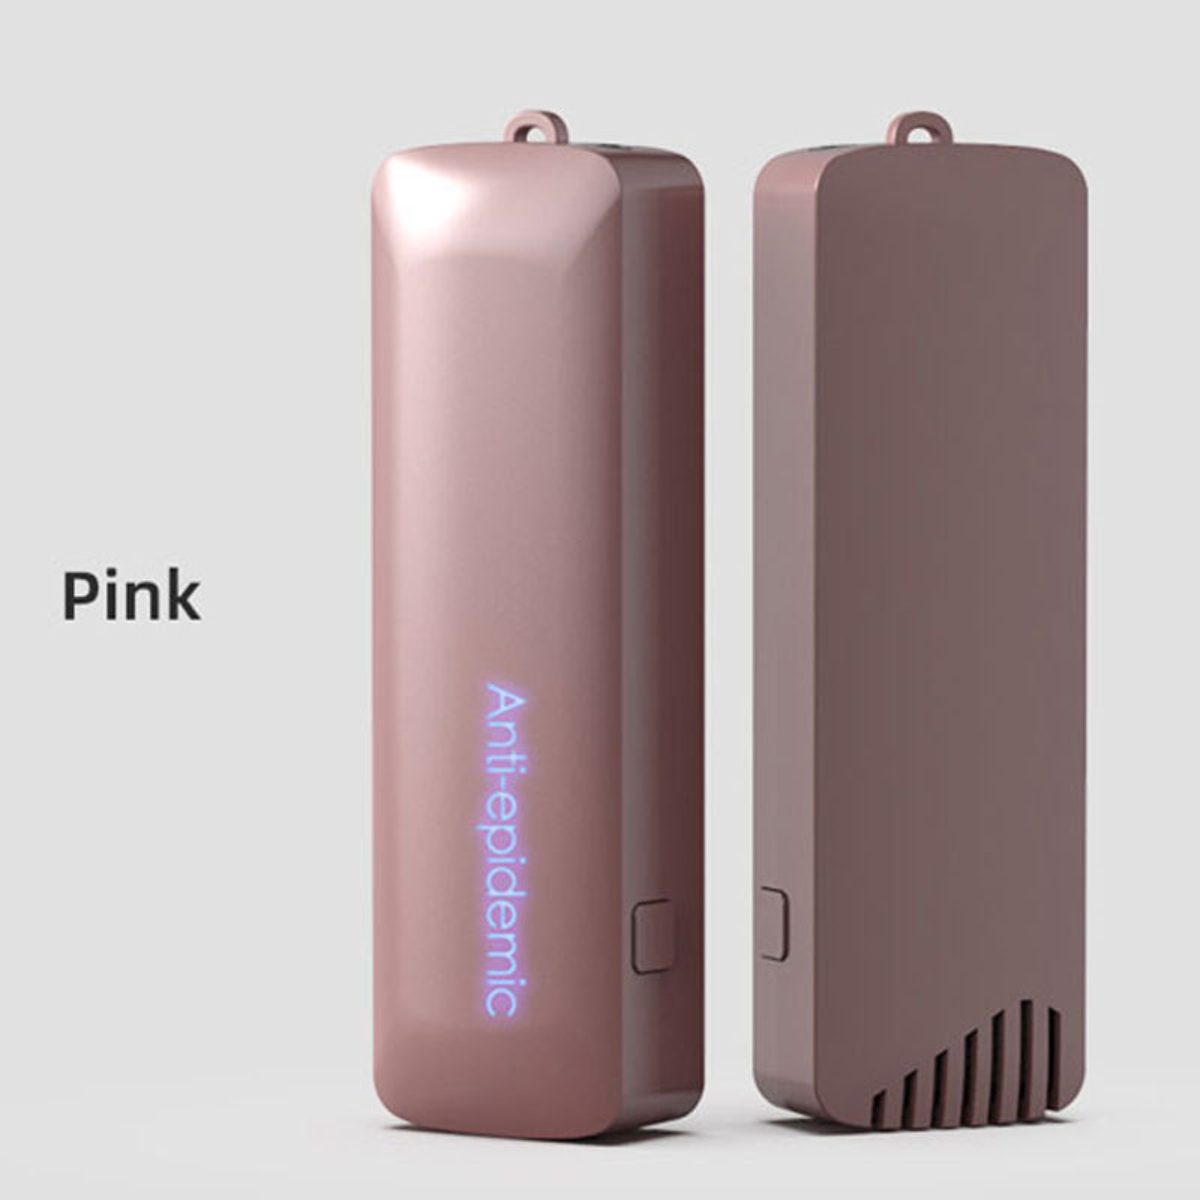 m²) Gerüche der tragbarer aus Luftreiniger Entfernt Pinker Rauch Rosa (1 und LACAMAX 1 Raumgröße: - Watt, Luft, Luftreiniger Bakterien beseitigt